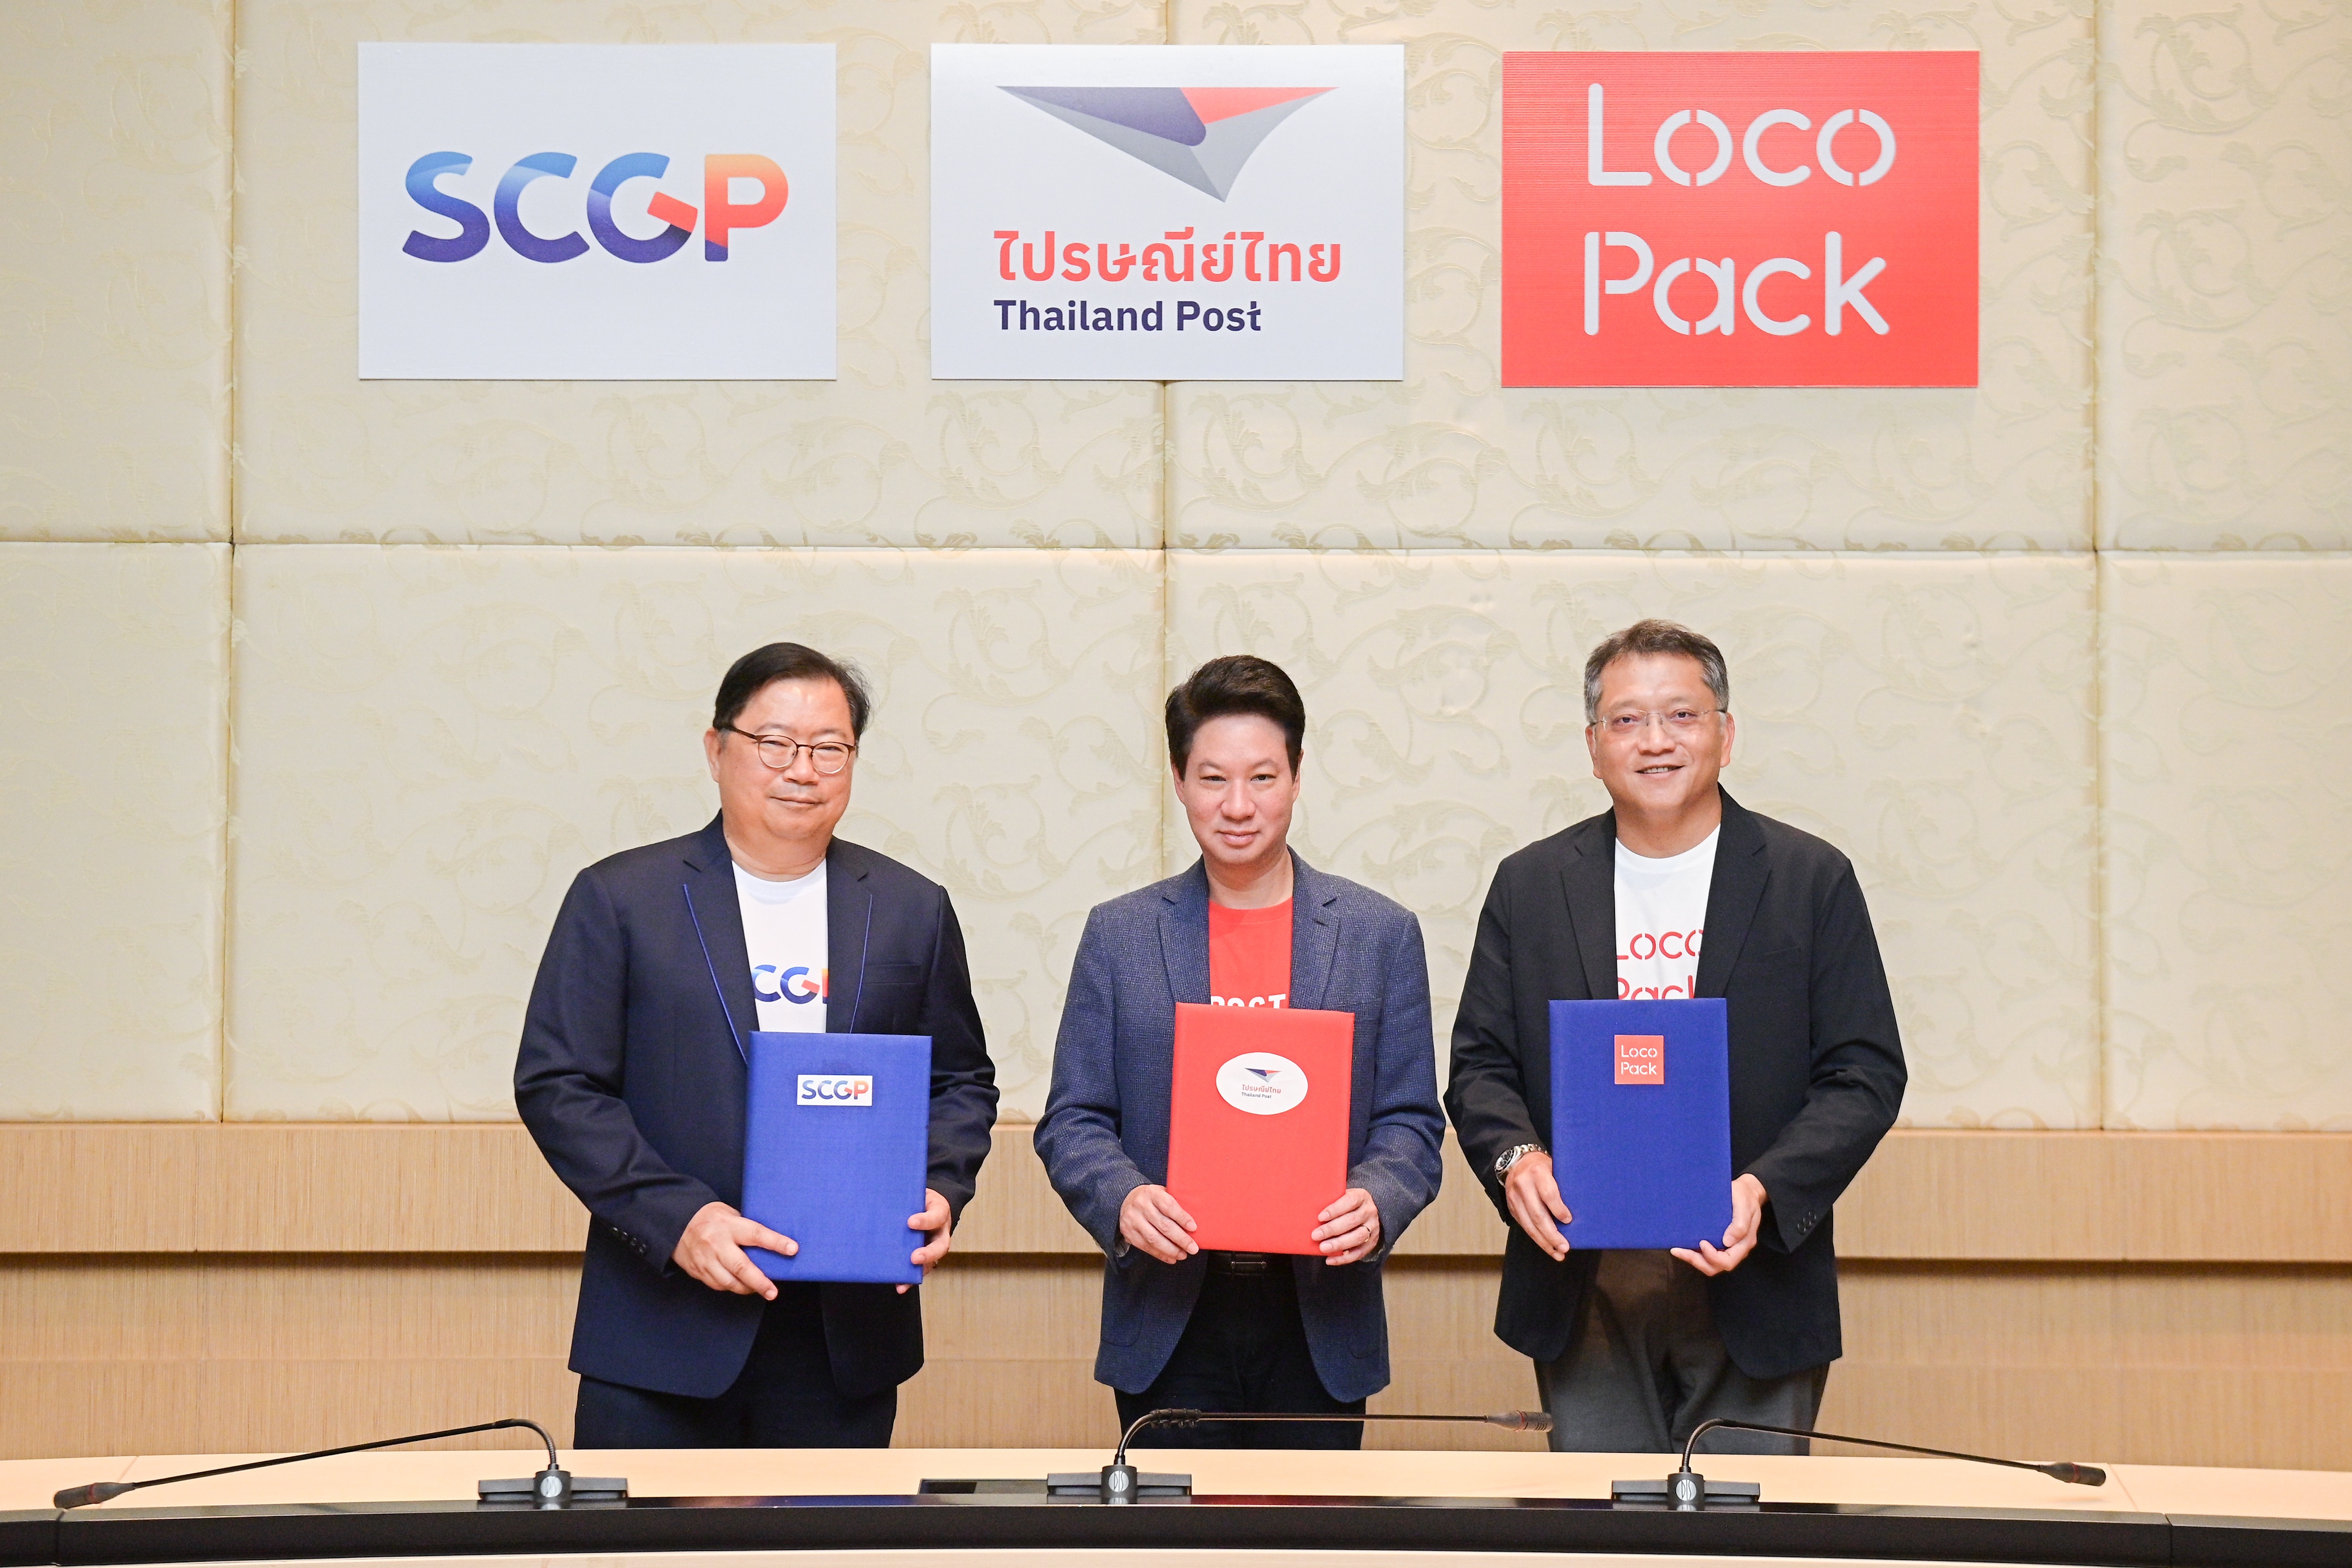 ไปรษณีย์ไทย จับมือ SCGP และ LocoPack เปิดบริการสั่งผลิตกล่อง-ซอง on demand ช่วยเพิ่มมูลค่าสินค้า พร้อมสนับสนุนผู้ประกอบการรายย่อย